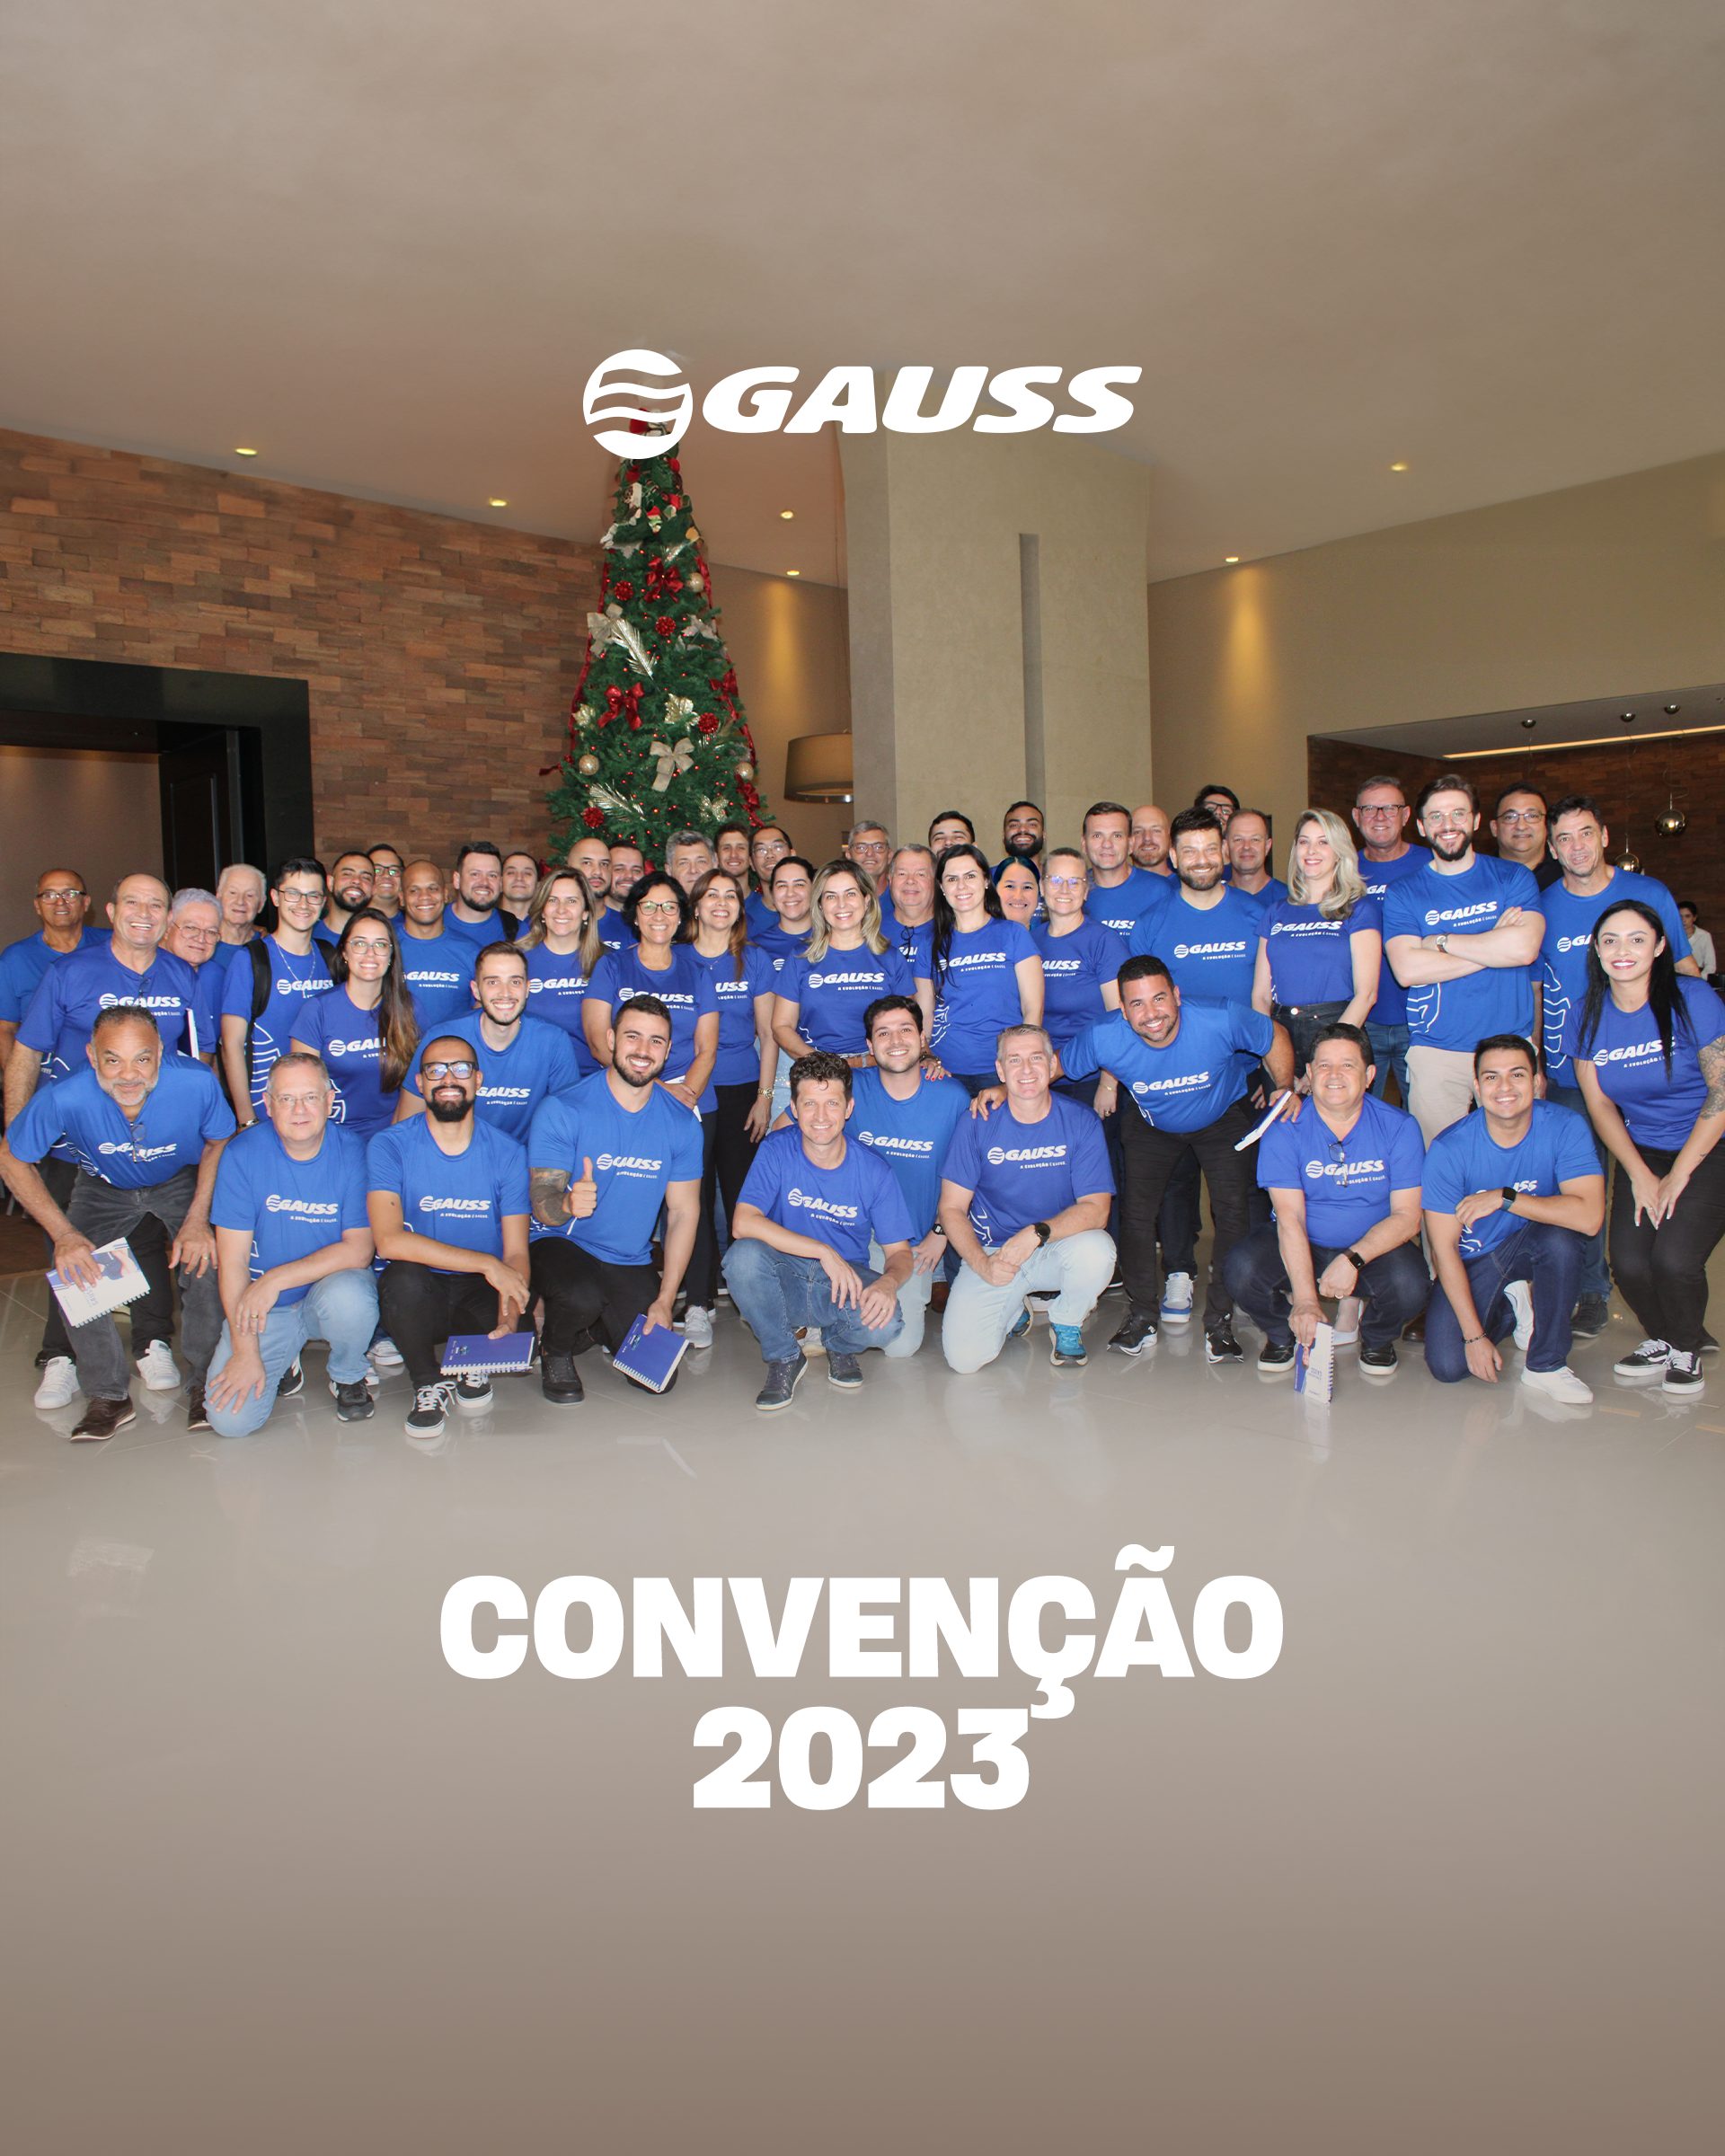 Convenção Gauss auto 2023!